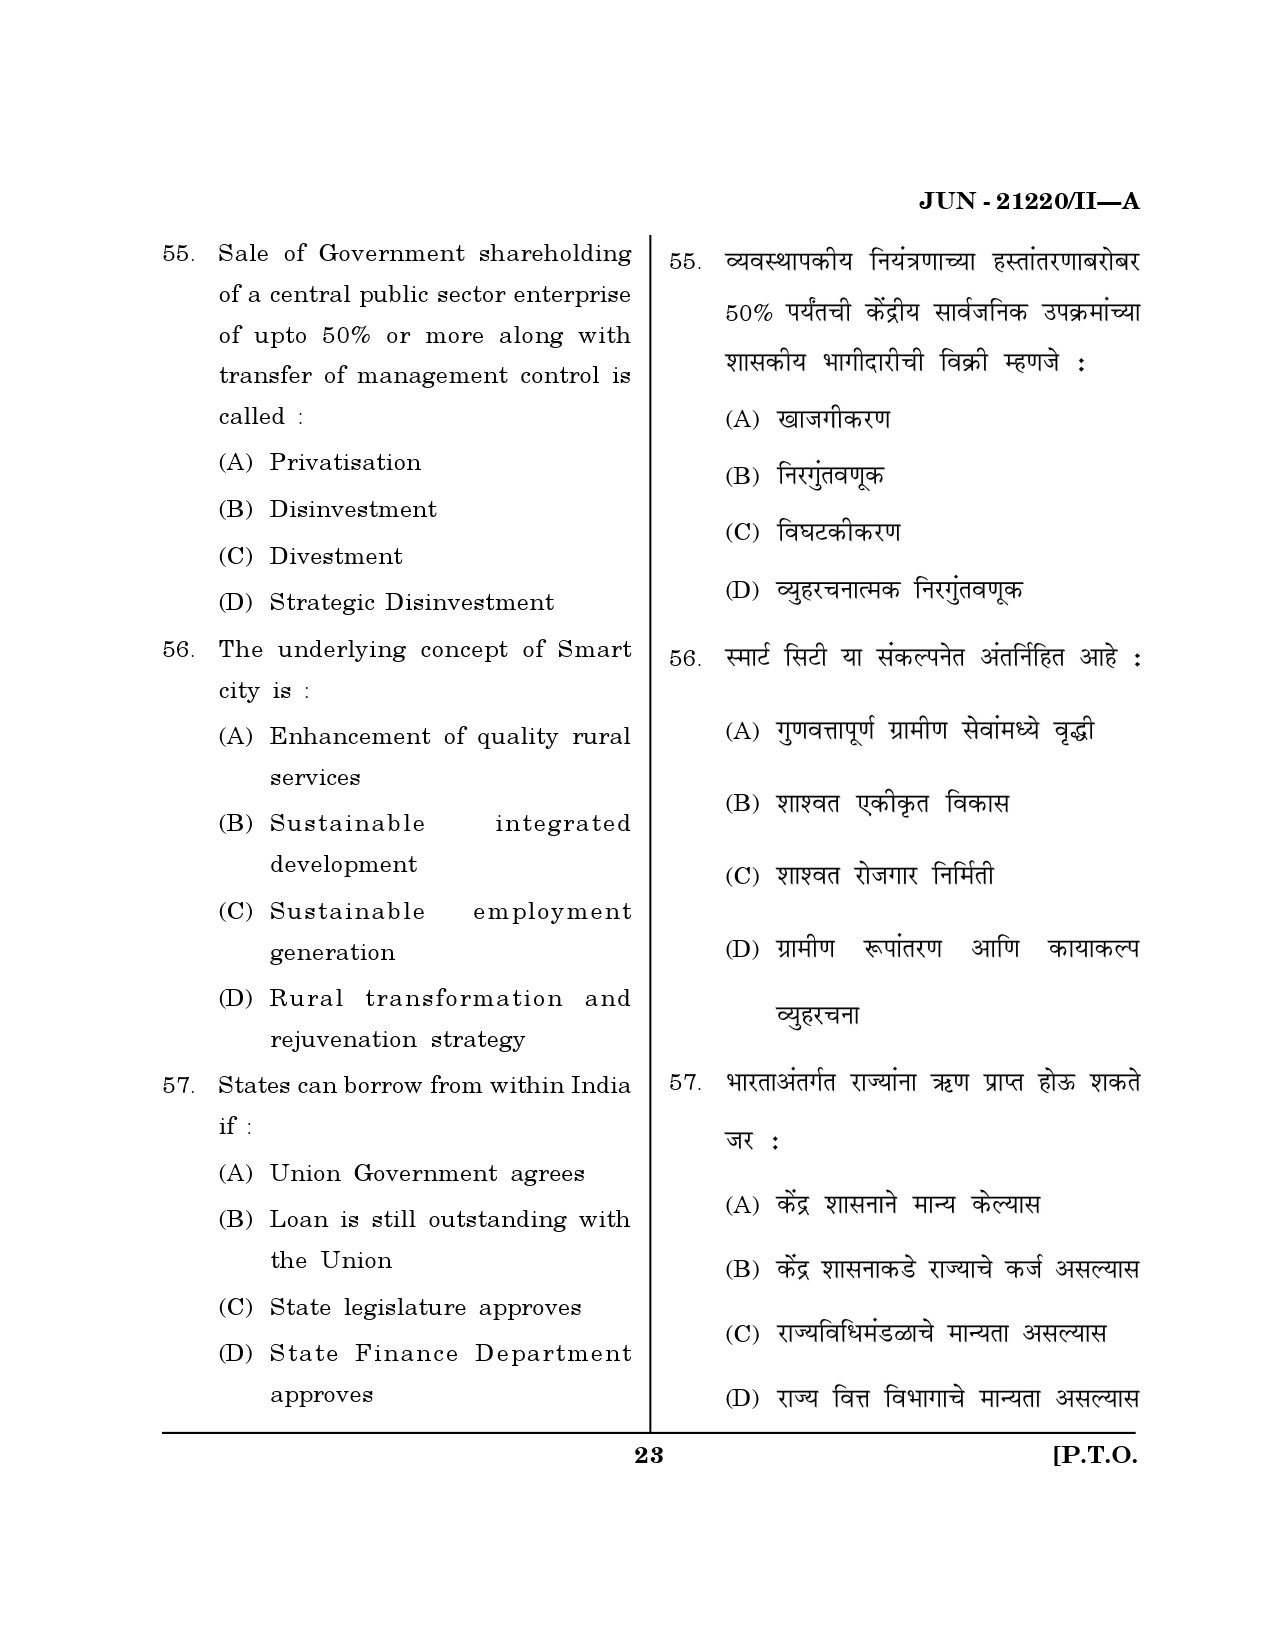 Maharashtra SET Public Administration Question Paper II June 2020 22